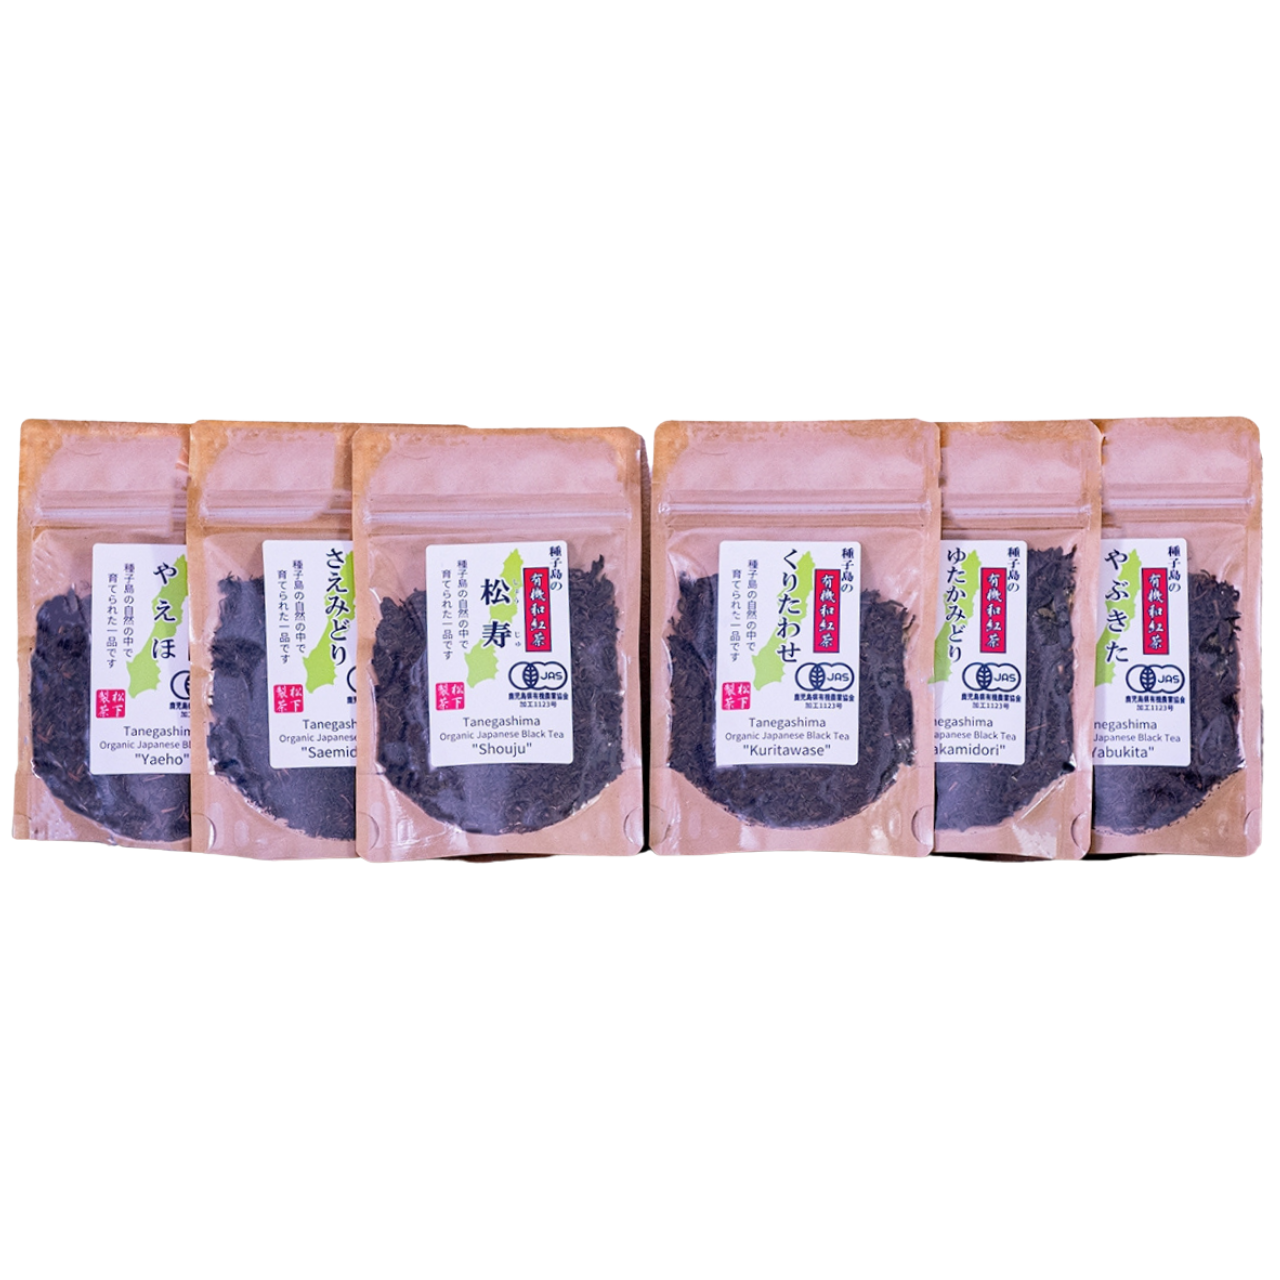 種子島の有機和紅茶 飲み比べセット 茶葉(リーフ) 30g×6本 松下製茶-0